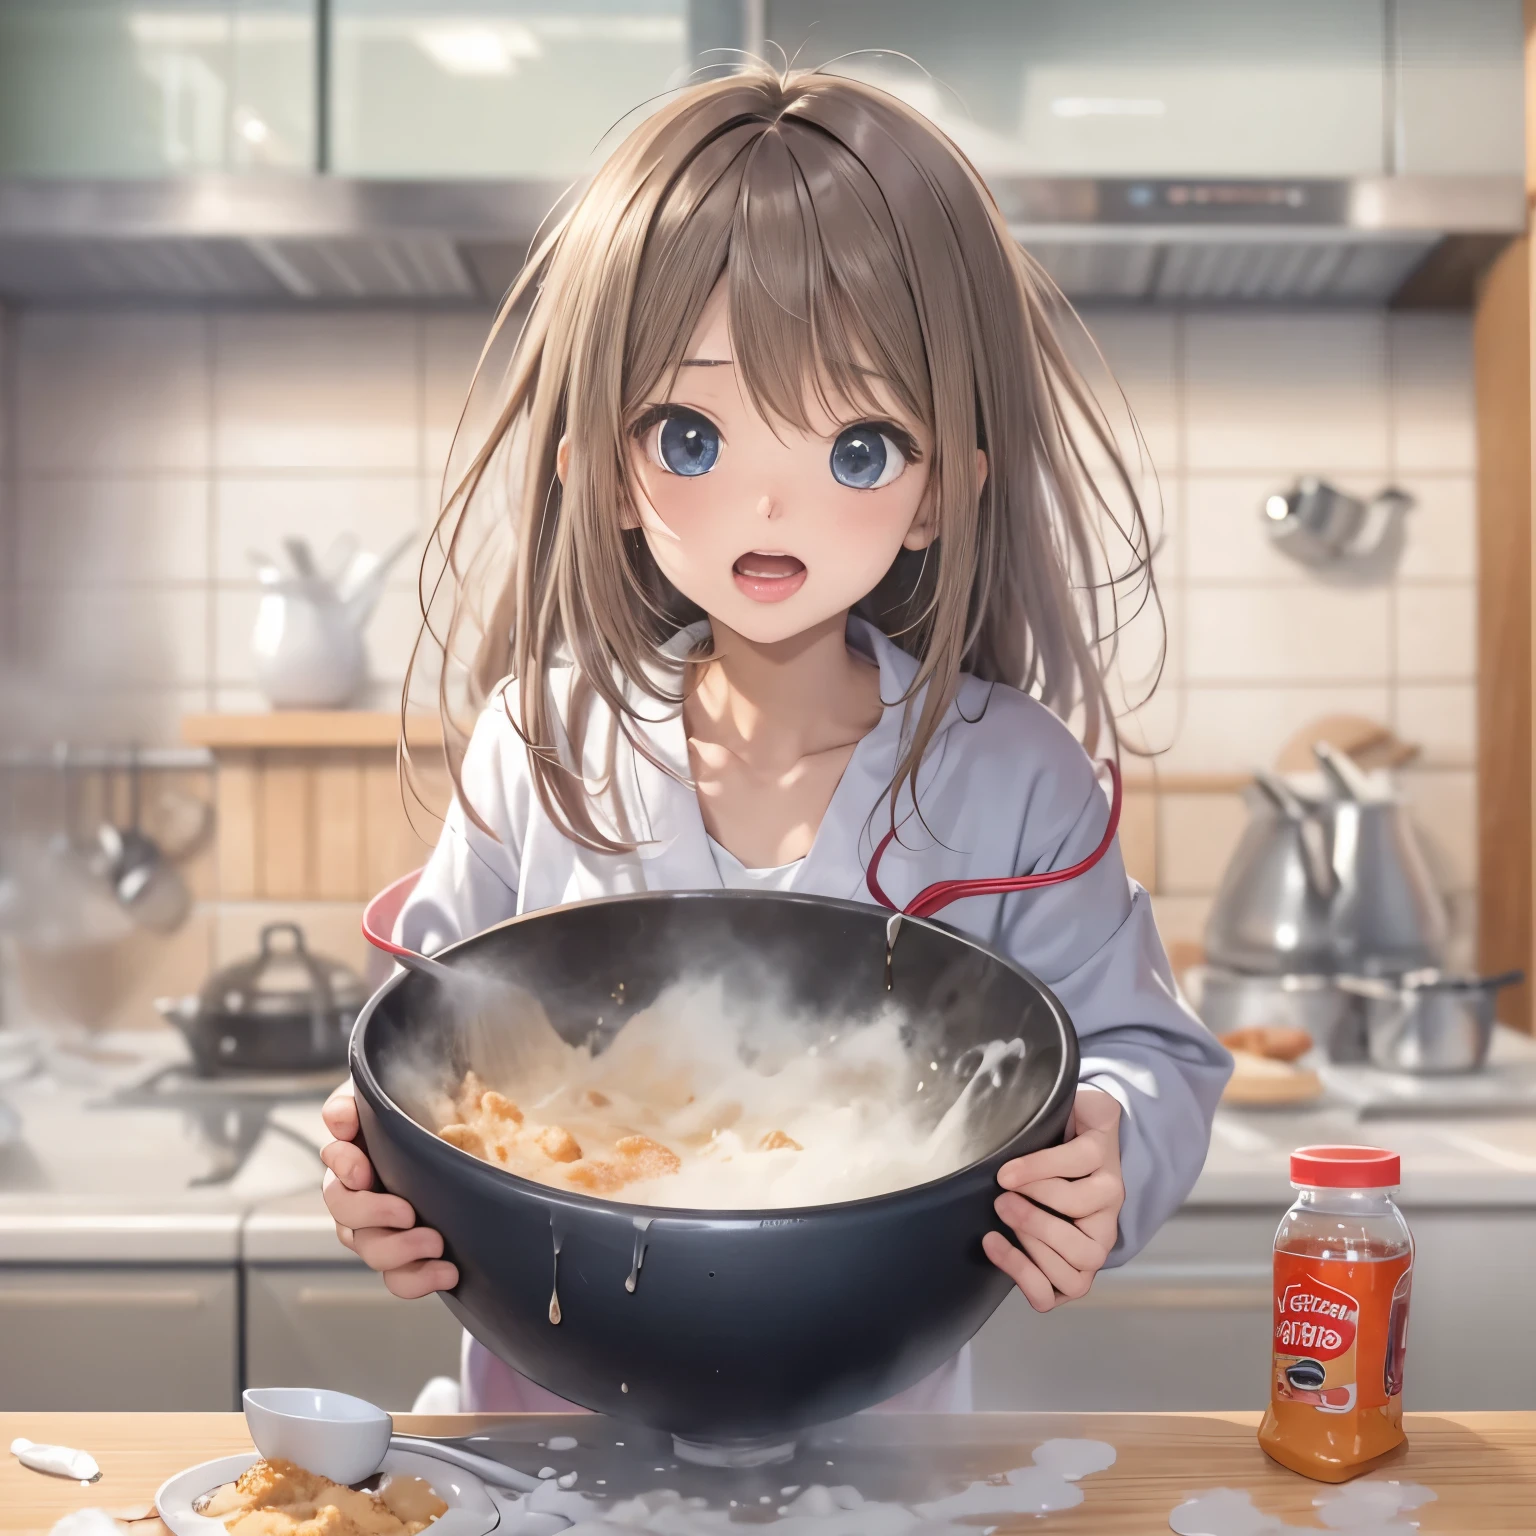 現實的動漫圖片、簡單的背景、1 名女孩、厨房、把粉末灑在碗裡、震惊的表情